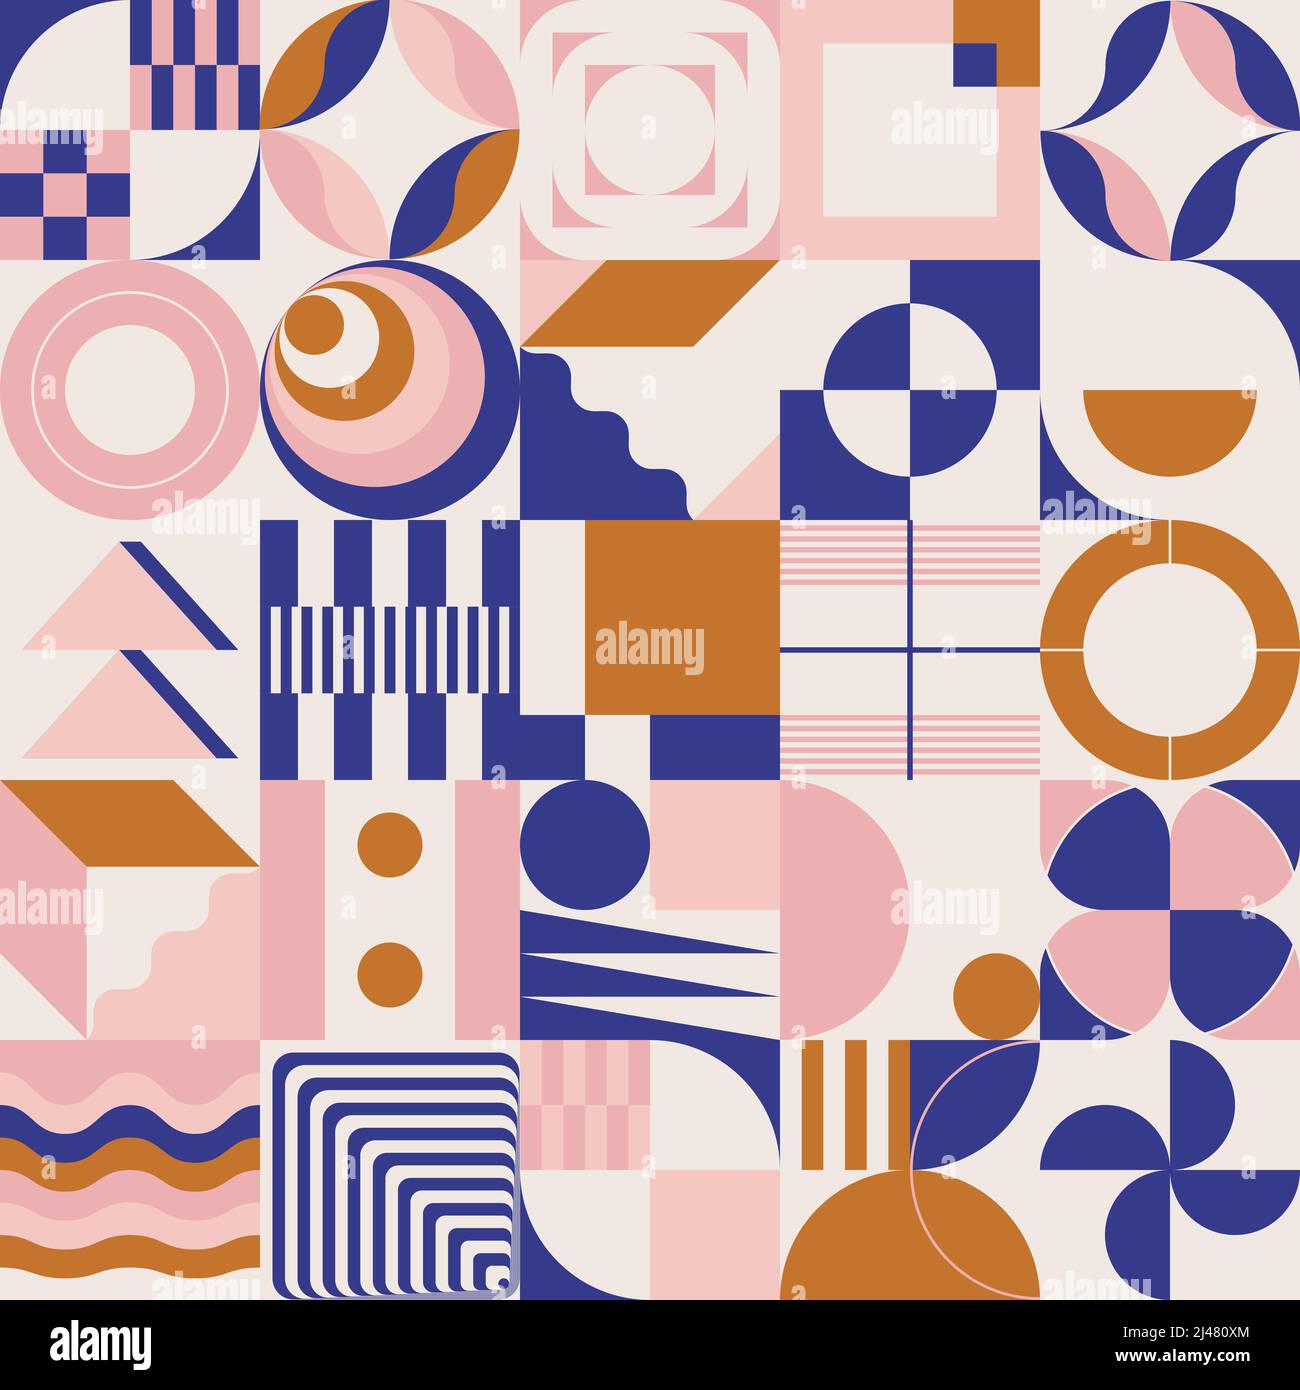 Digitale Collage Grafiken Muster mit Vektor abstrakte Formen und generative geometrische Formen, nützlich für Web-Hintergrund, Poster Art Design, magazi Stock Vektor